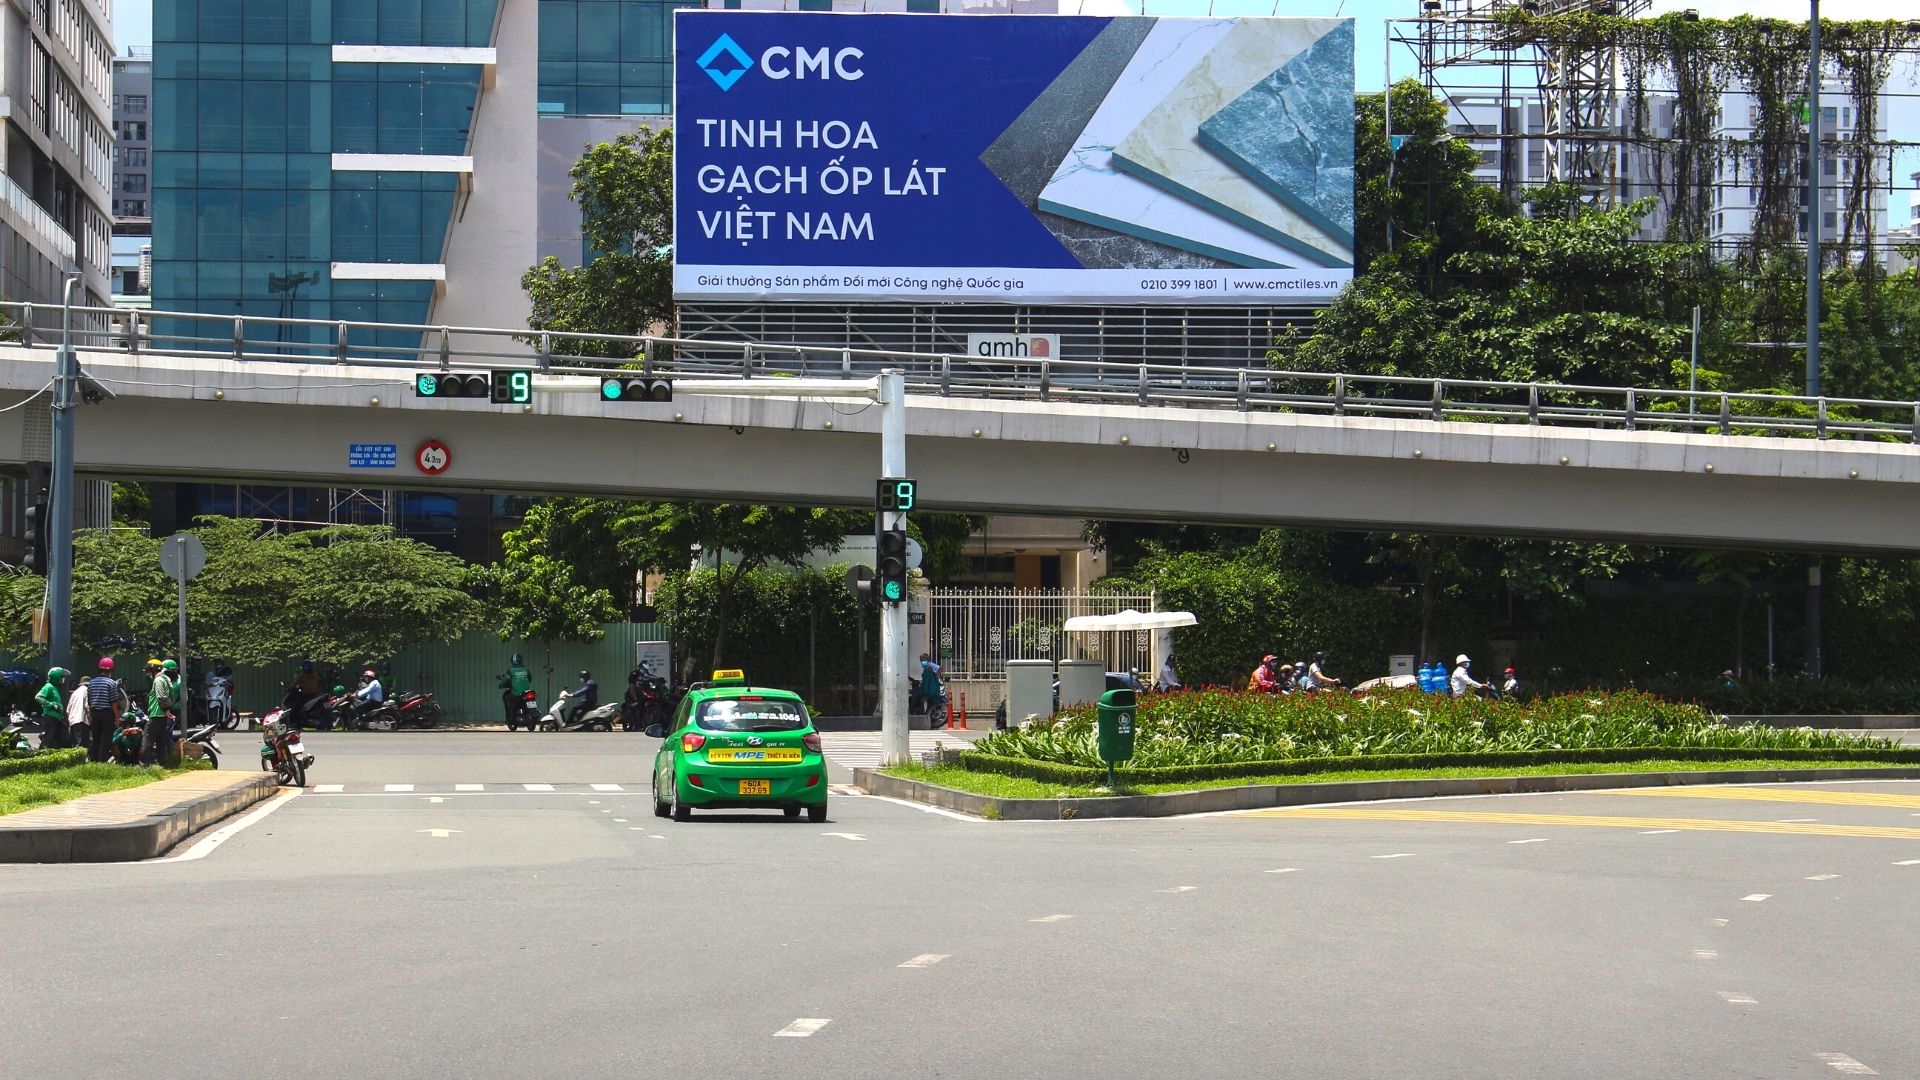 Hình ảnh nhận diện thương hiệu mới của CMC tại sân bay Tân Sơn Nhất.